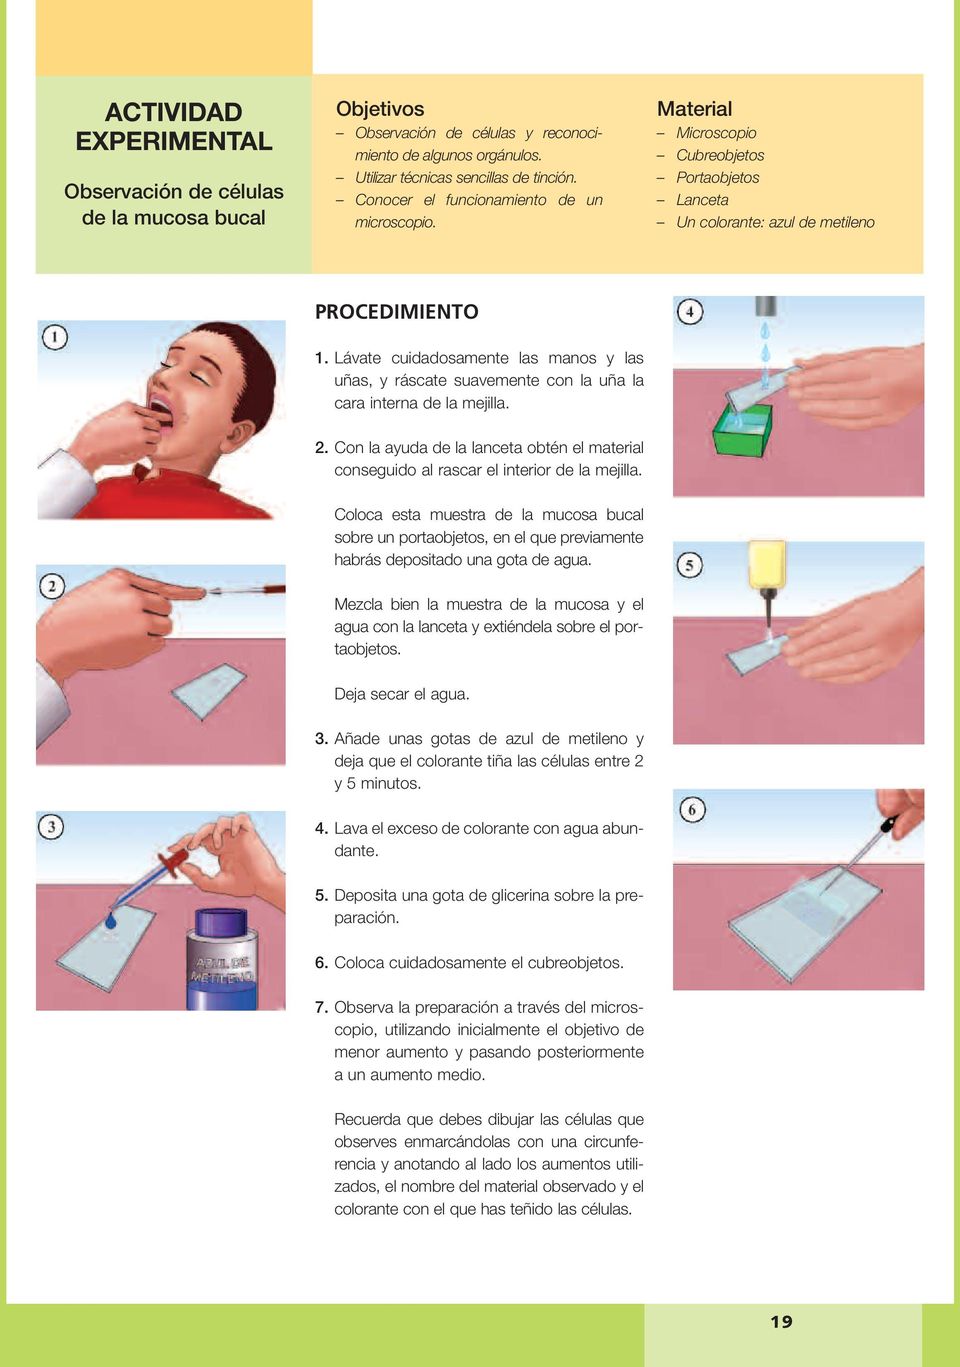 Lávate cuidadosamente las manos y las uñas, y ráscate suavemente con la uña la cara interna de la mejilla. 2.